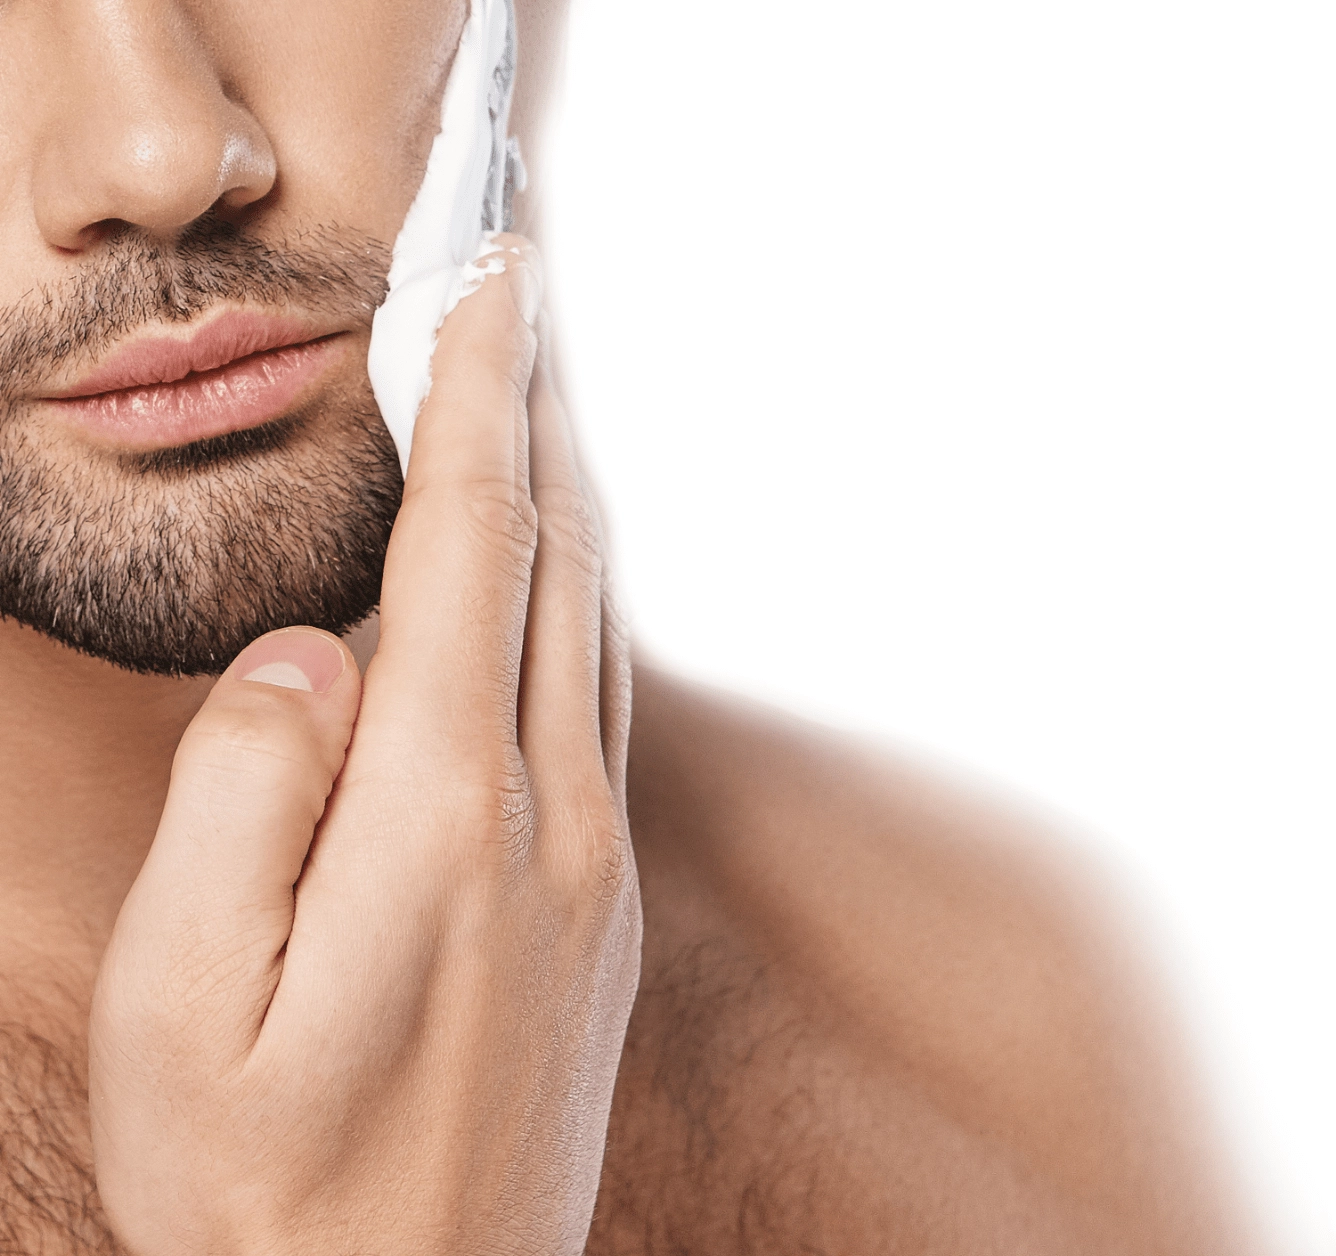 Fusion5 Proglide Serinletici Tıraş Jeli size rahatlatıcı bir tıraş deneyimi yaşatır